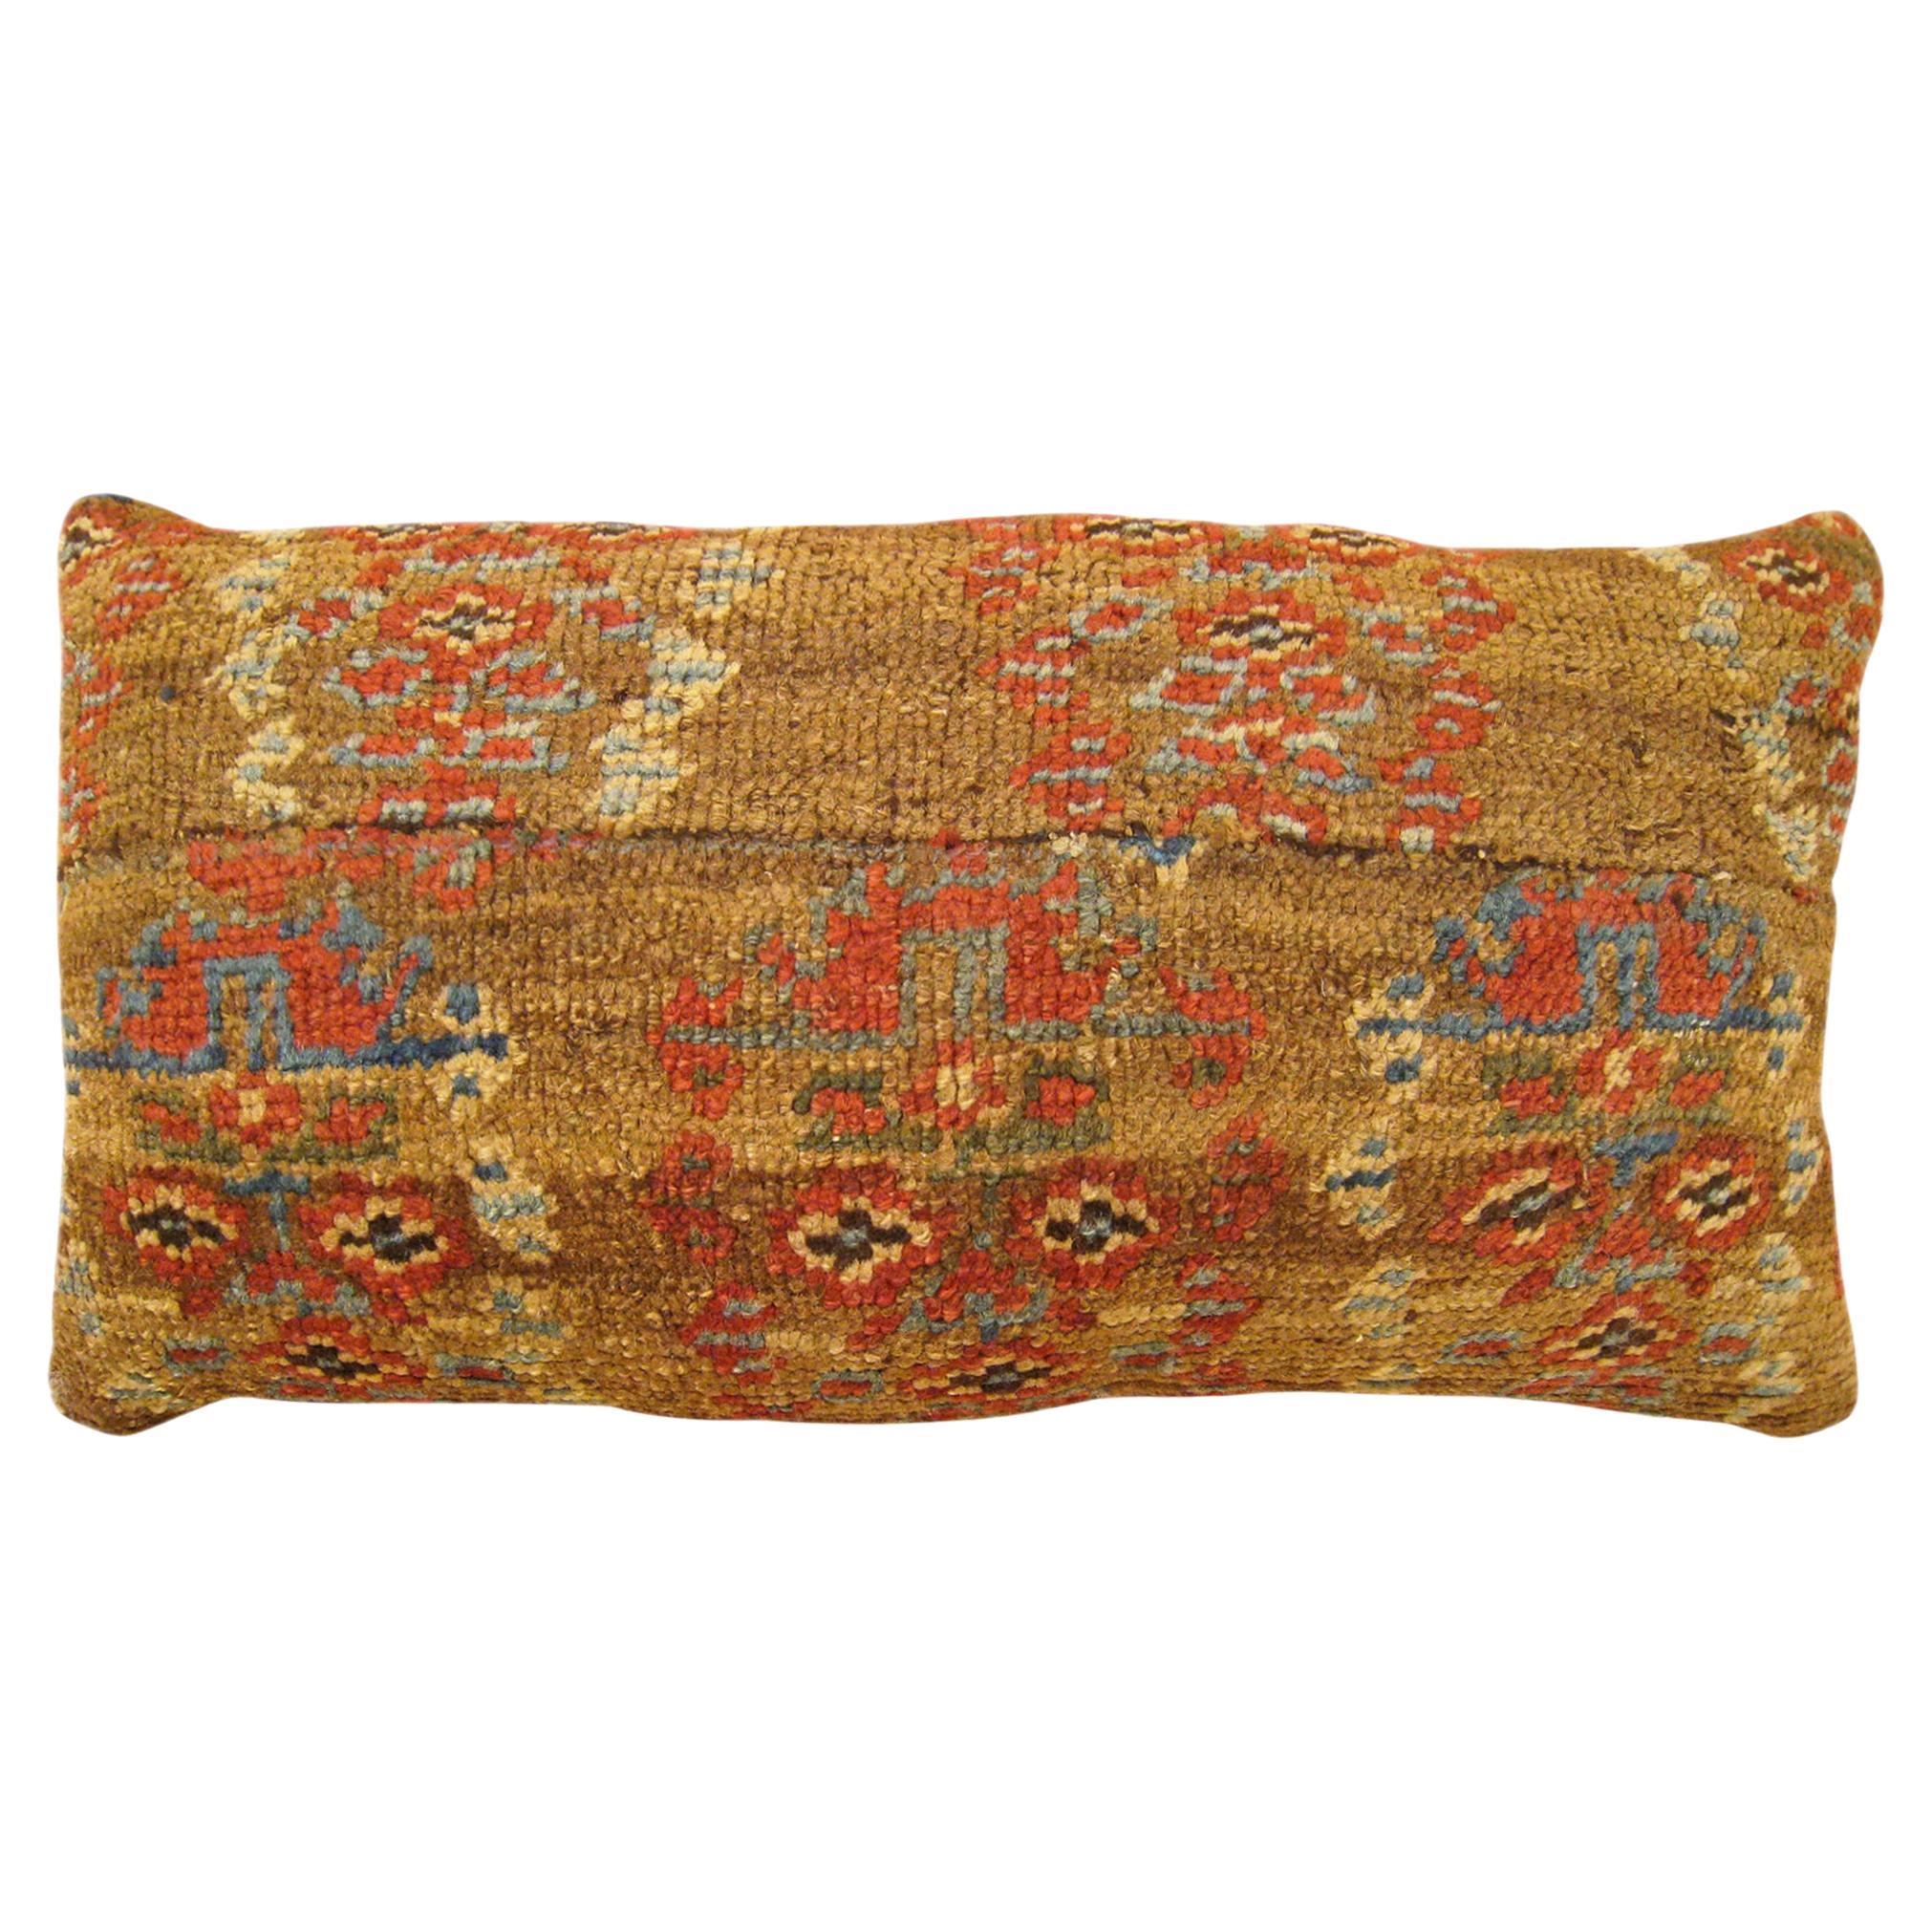 Decorative Antique Persian Bakshaish Carpet Pillow with Floral Elements